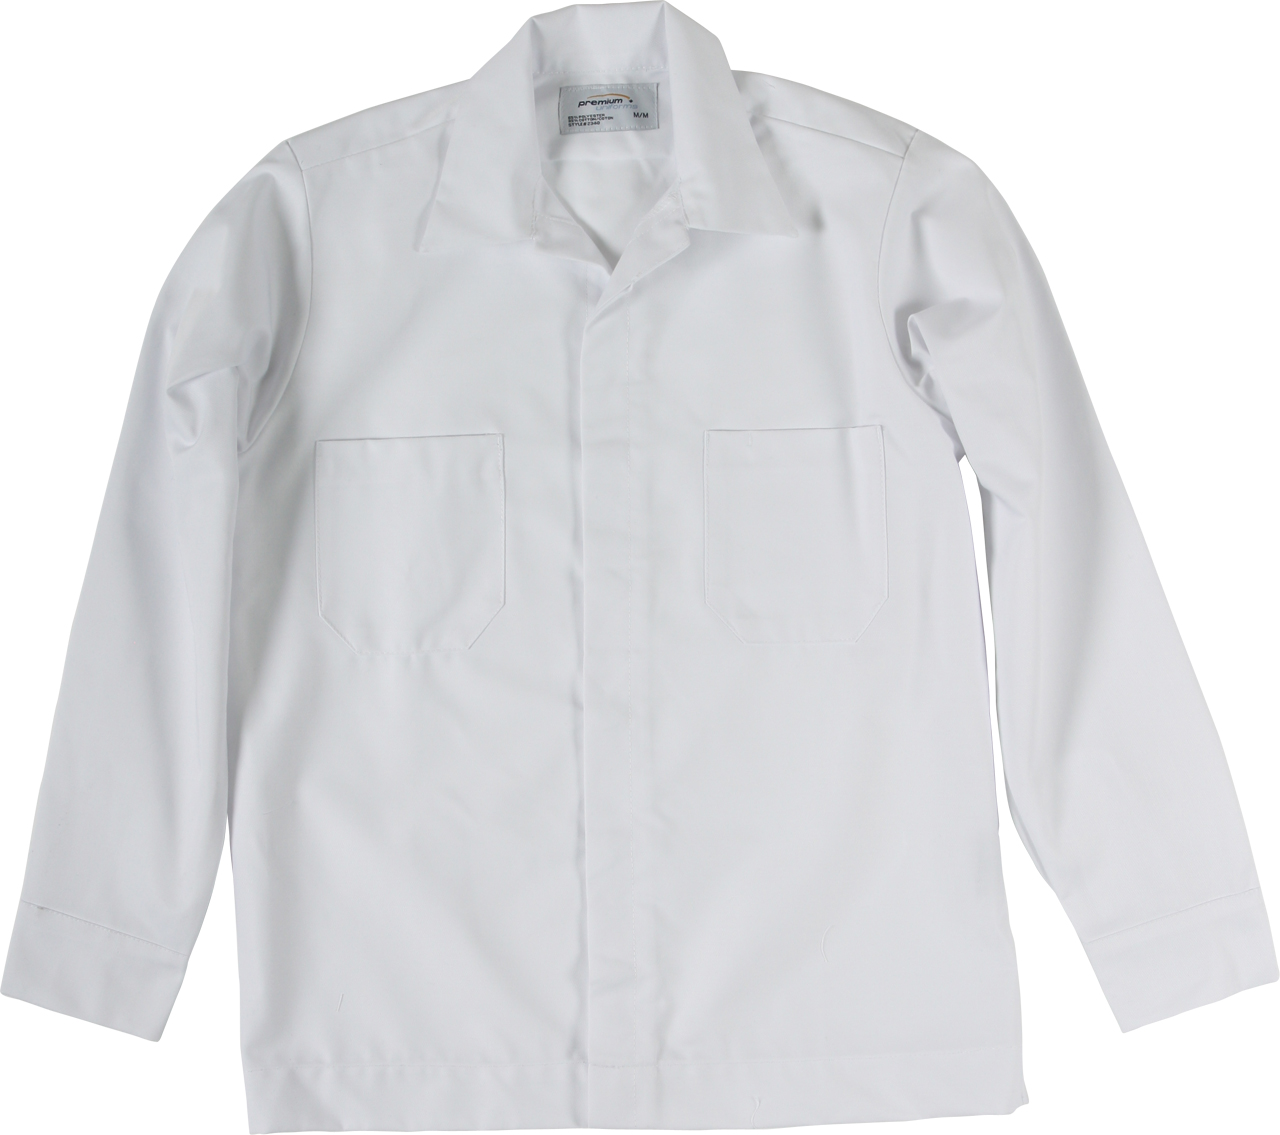 Picture of Premium Uniforms Long-Sleeve Automotive Shirt